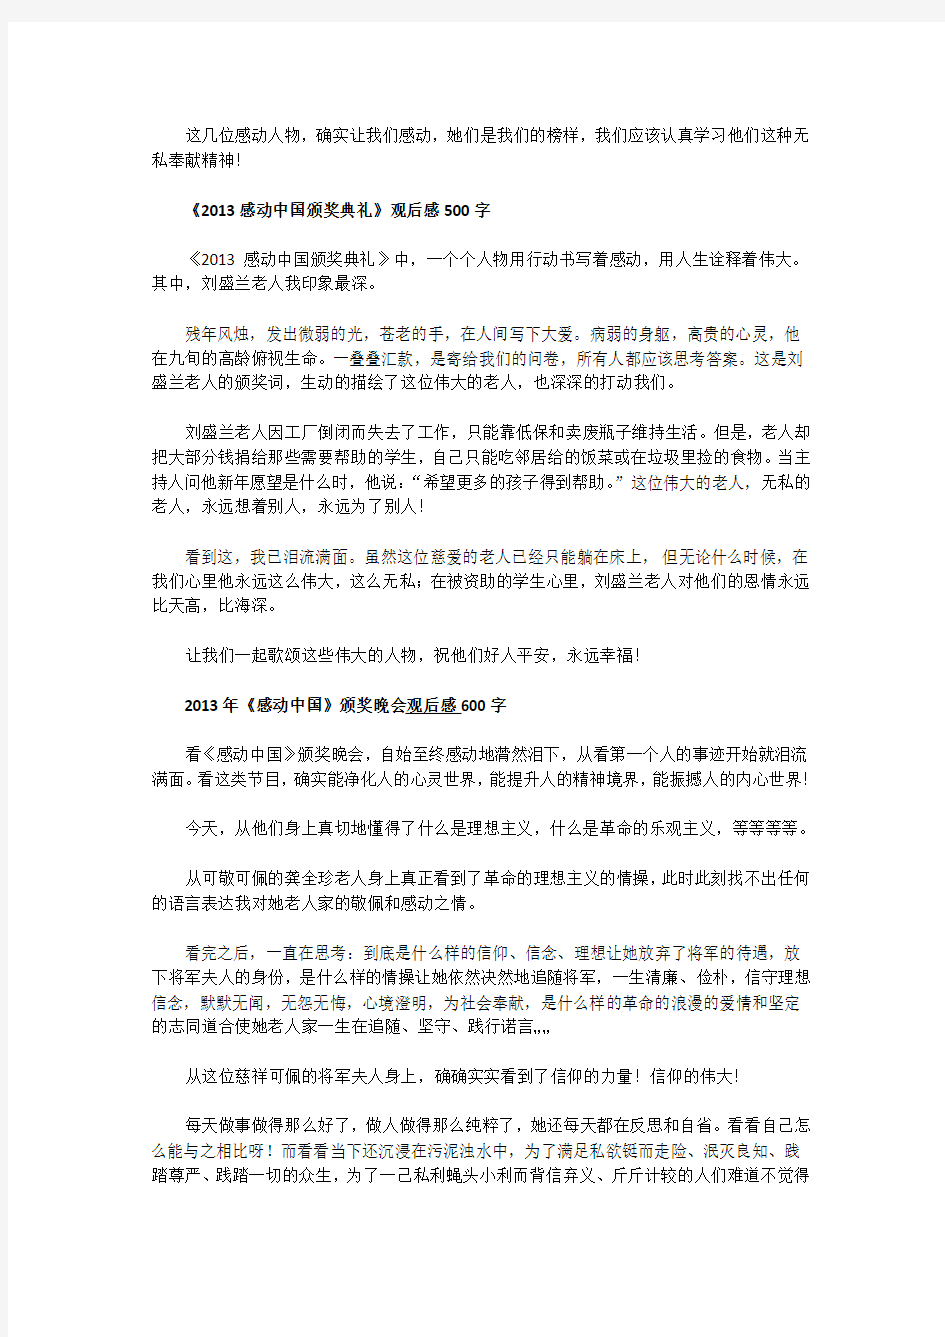 《2013感动中国十大人物颁奖典礼》观后感200字-800字